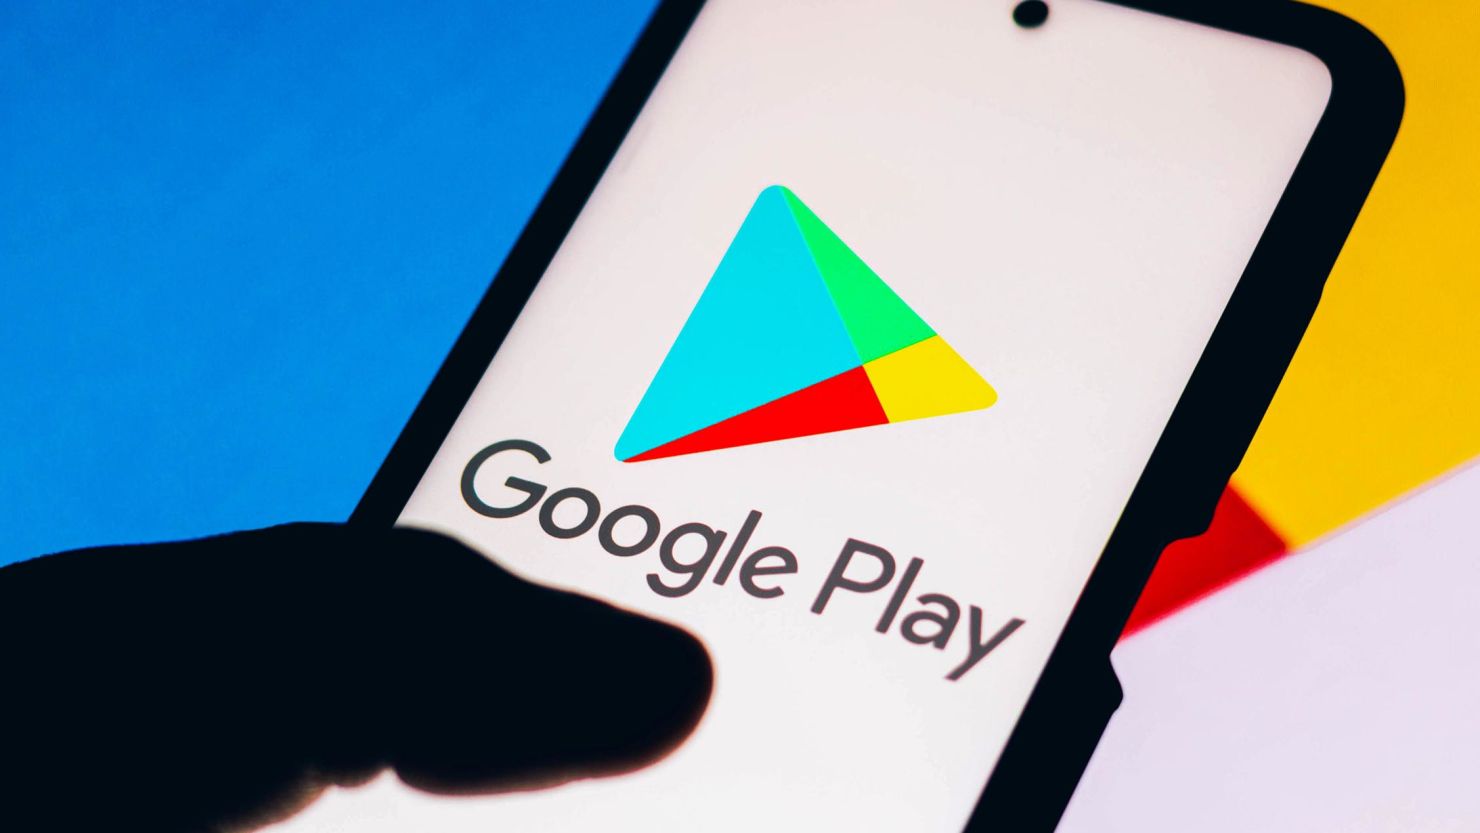 Sklep Google Play wprowadza nową opcję płatności "Poproś kogoś innego o zapłacenie"